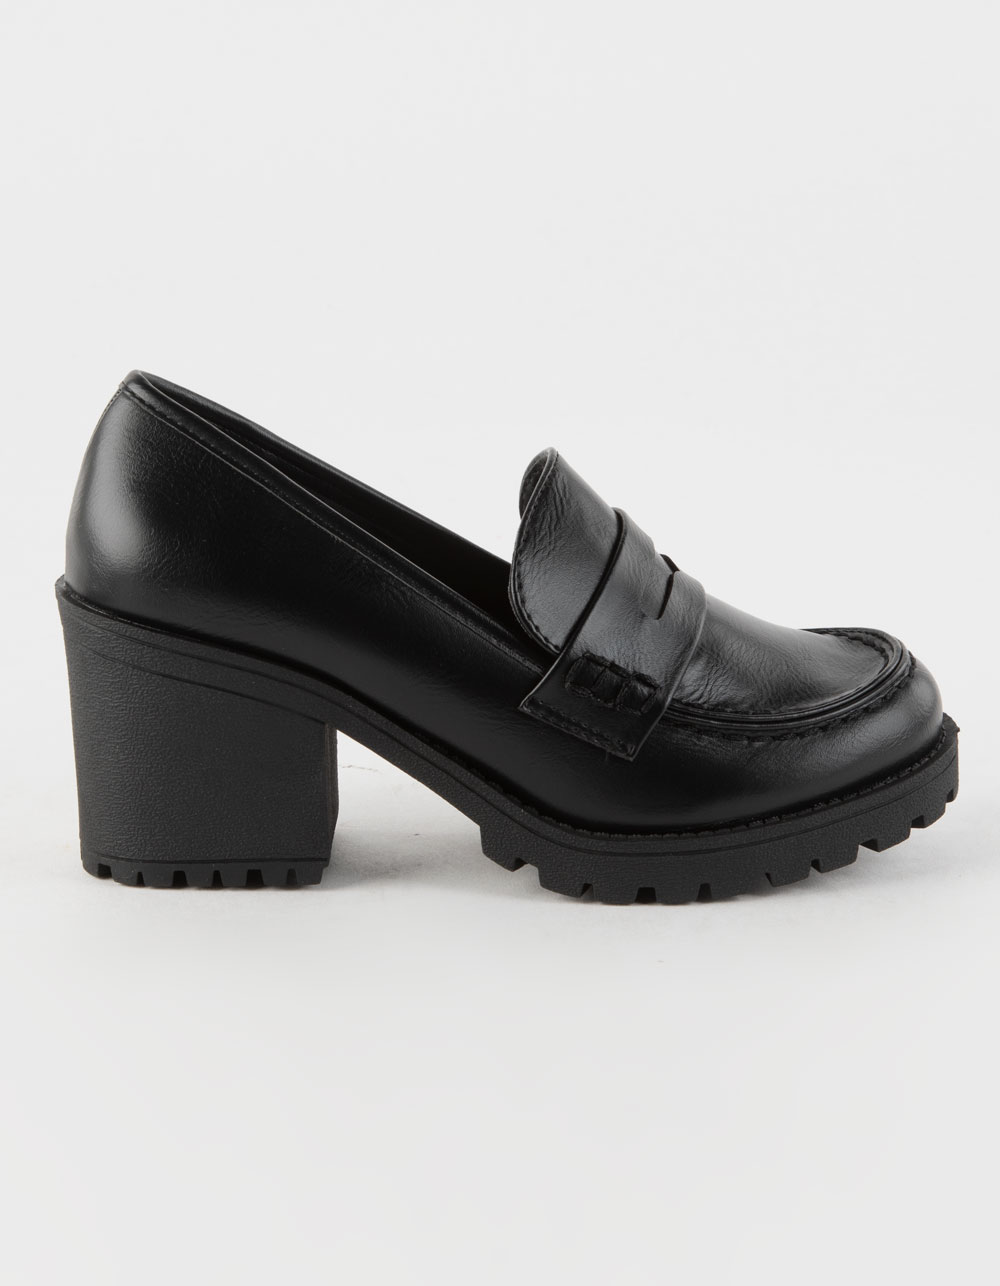 SODA Kinder Platform Womens Penny Loafer Shoes - BLACK | Tillys